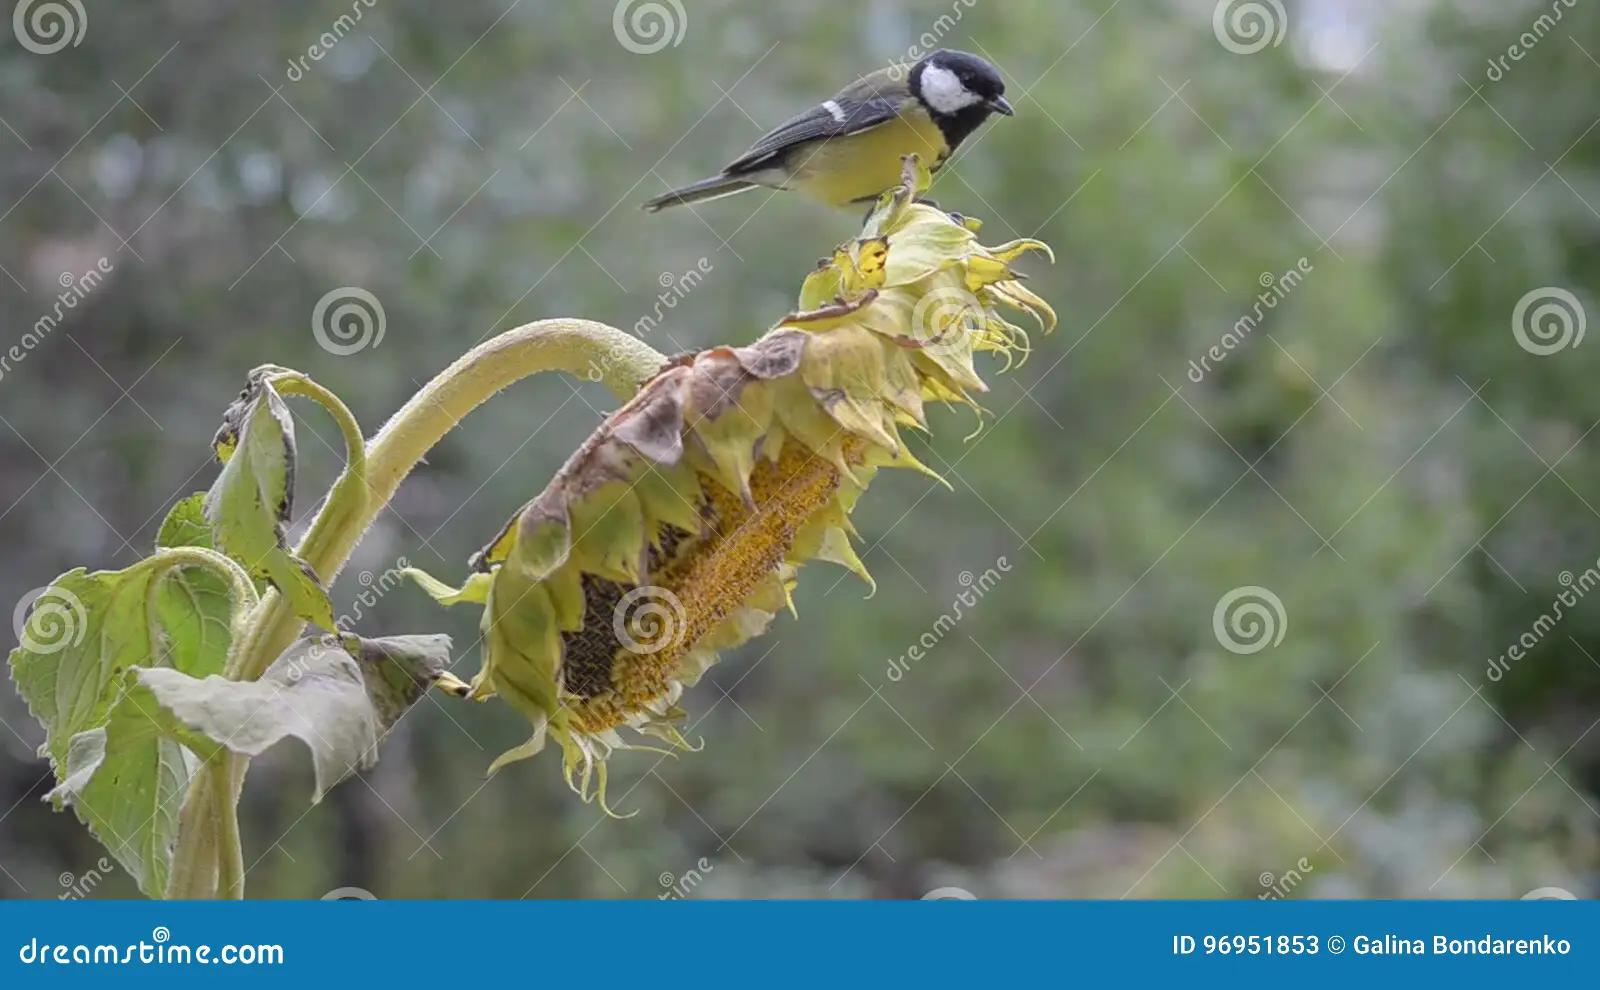 ave comiendo semilla de girasol - Cómo evitar que los pájaros se coman los girasoles